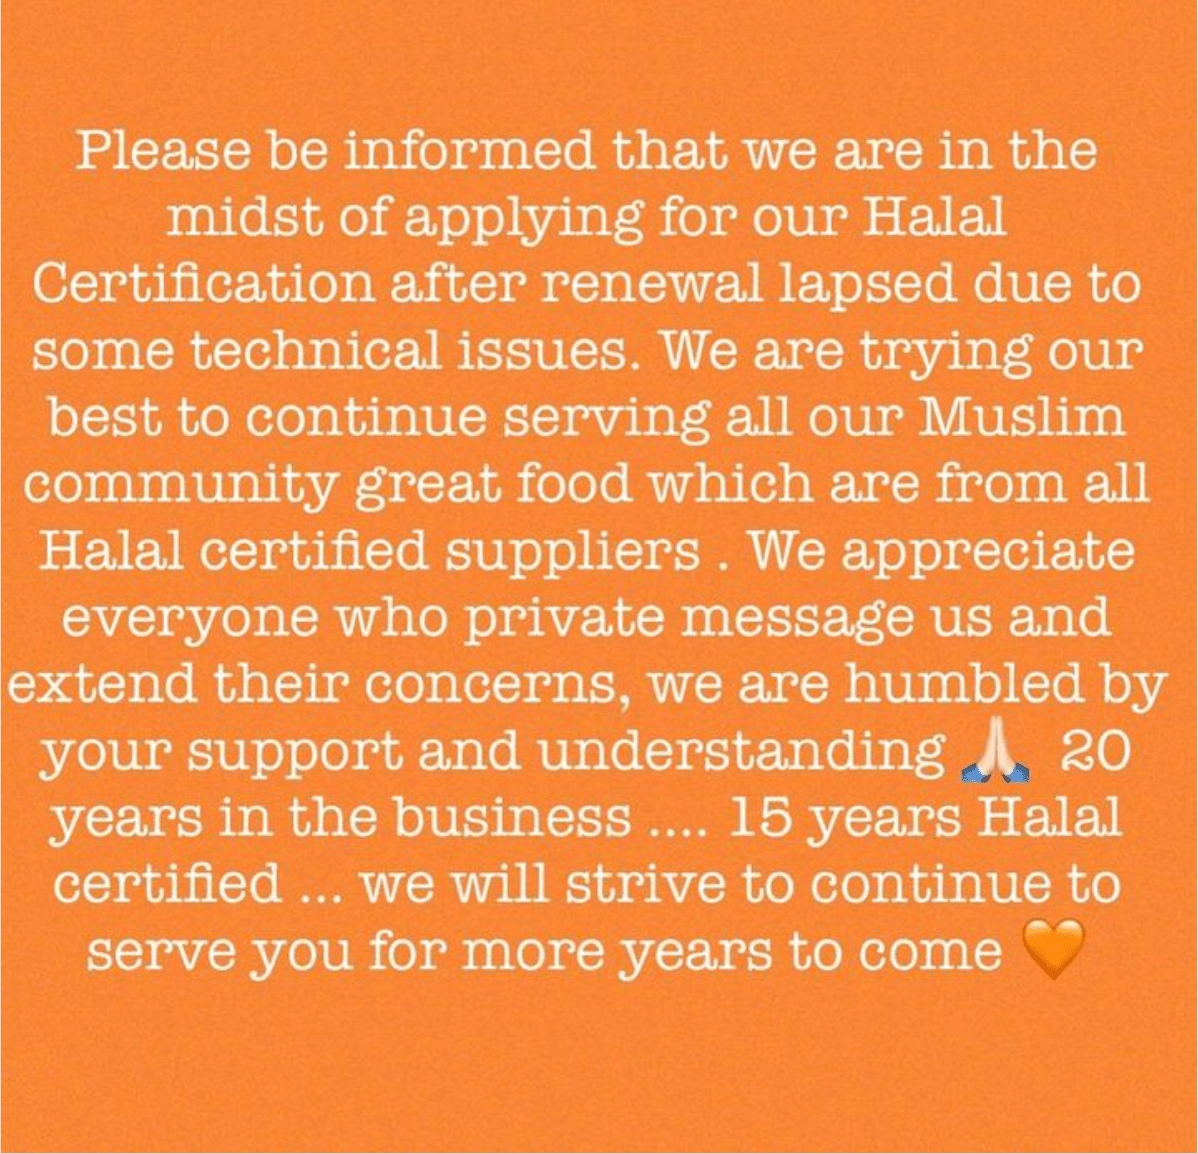 spize halal certification